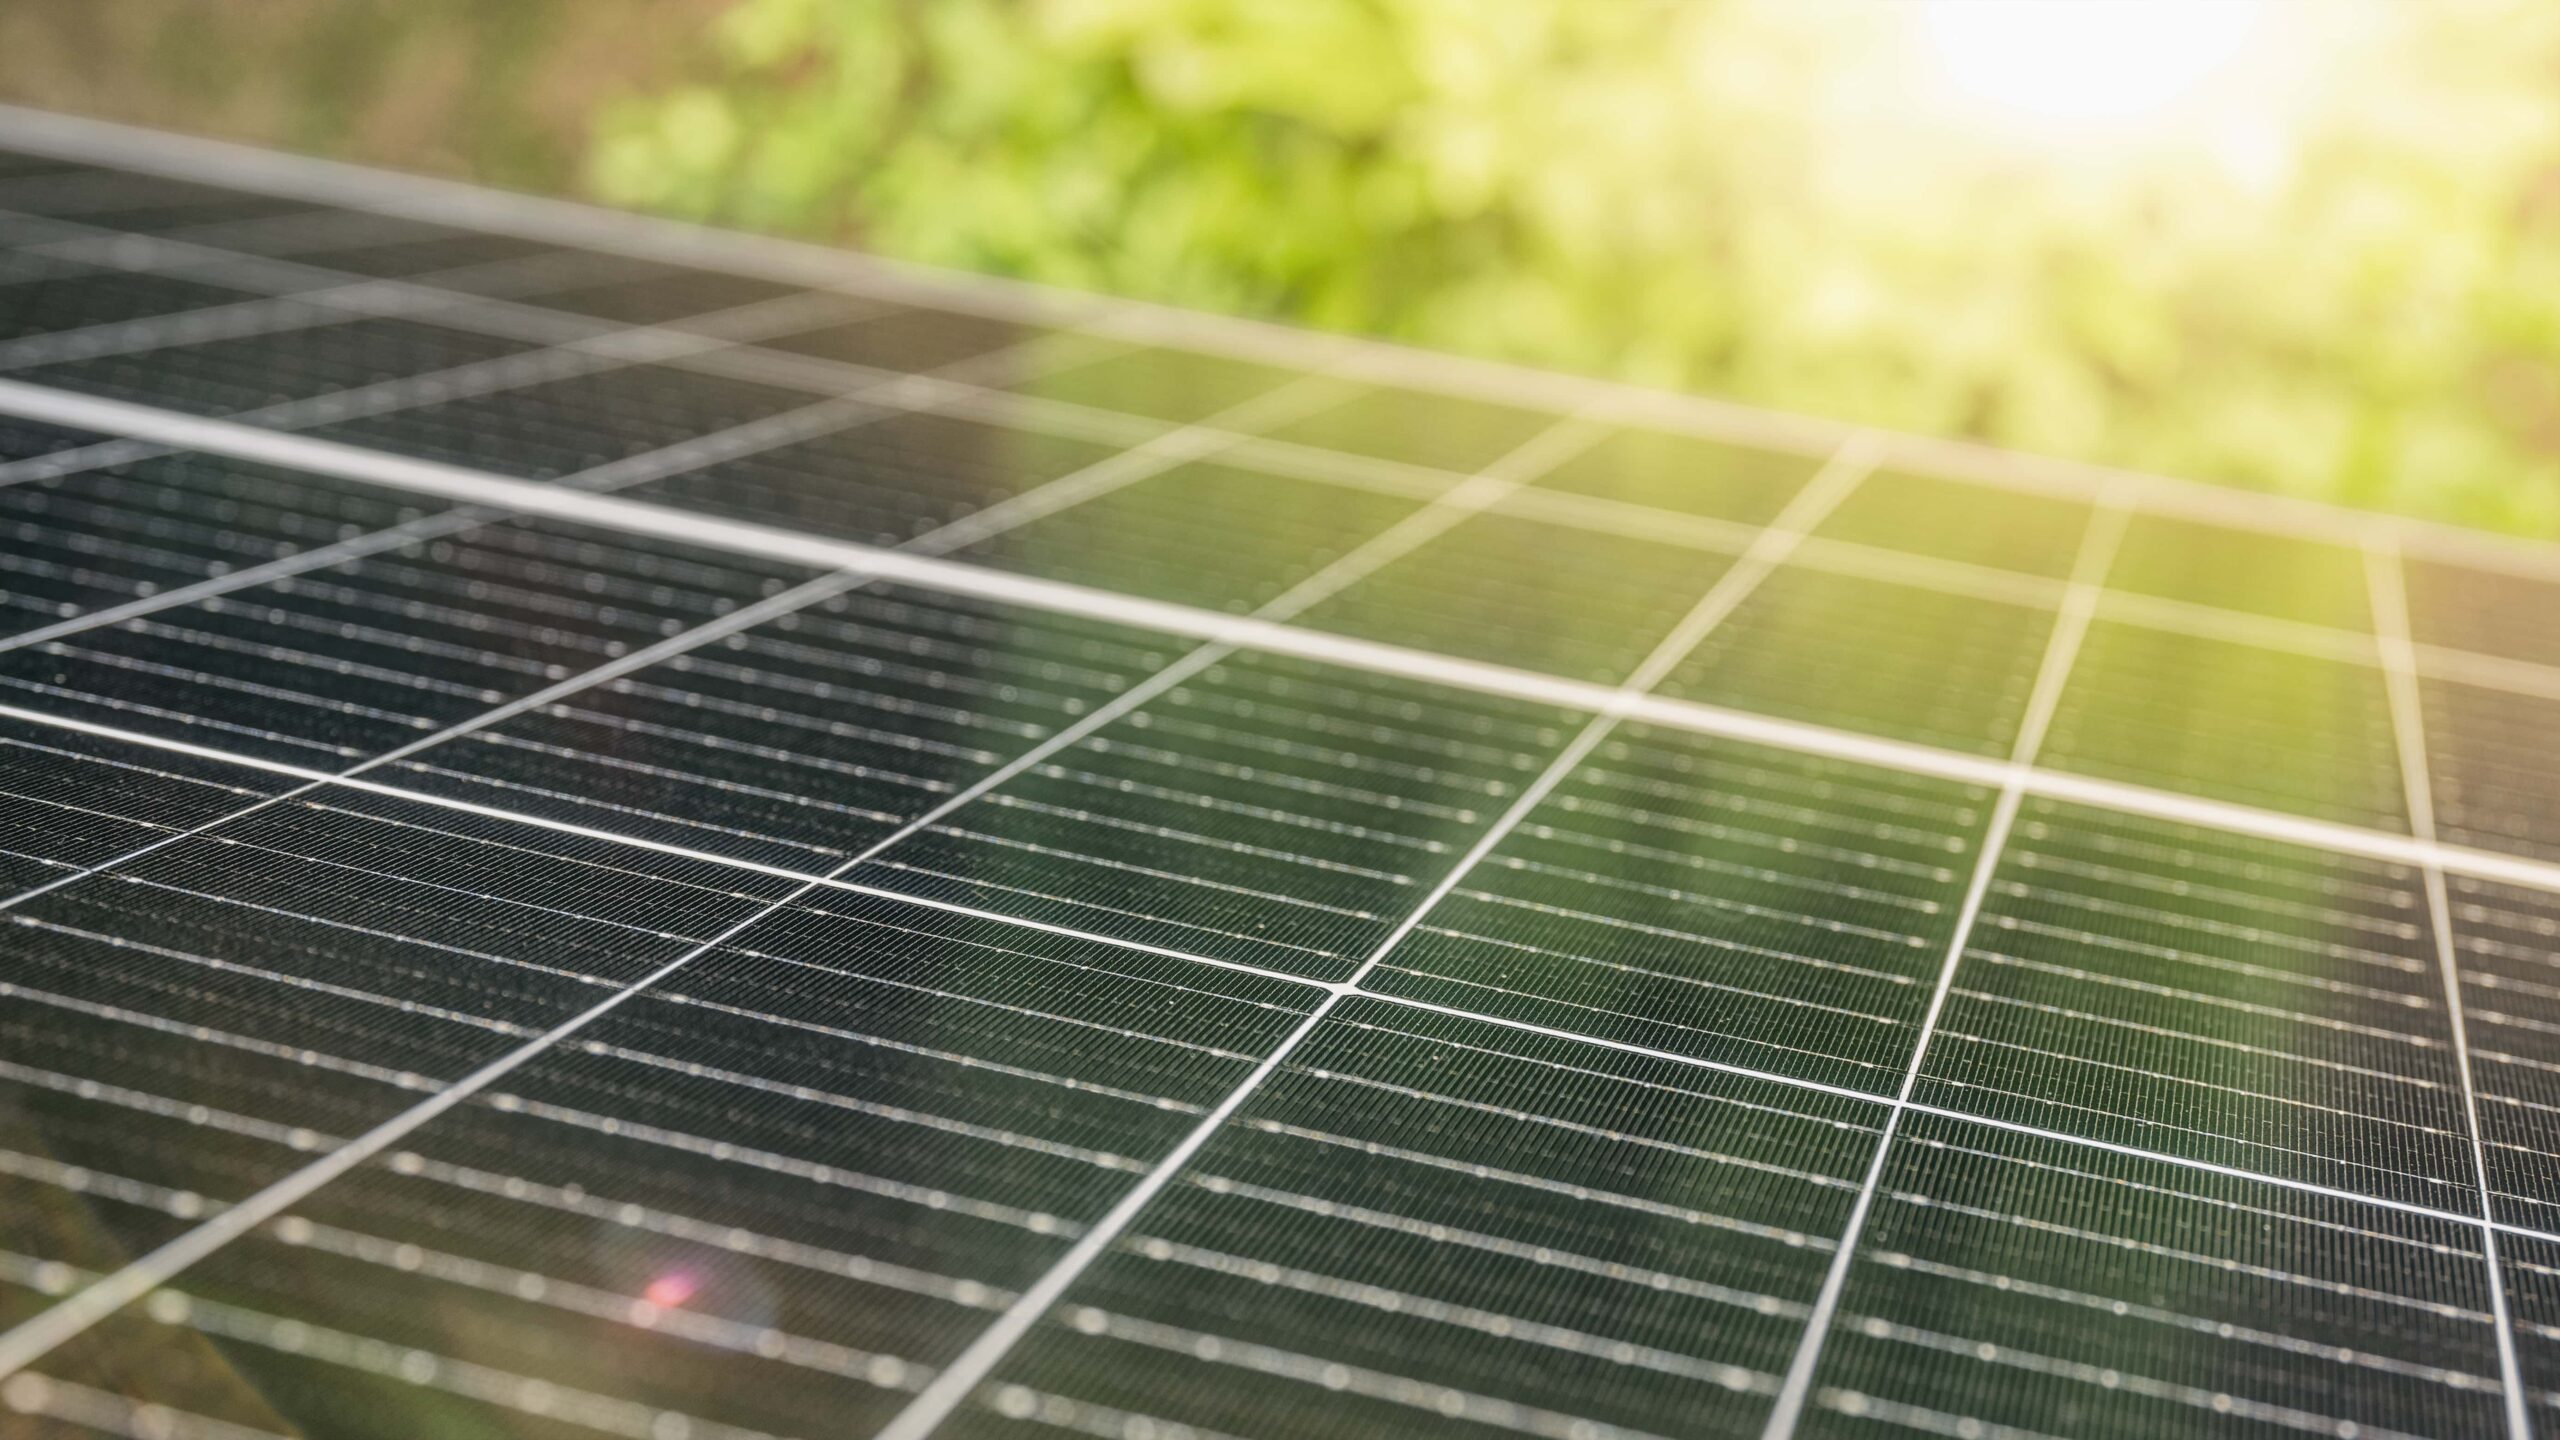 Solaranlagen für eine sichere Zukunft. E-Megawatt ist Ihr Ansprechpartner für Photovoltaikanlagen und Wärmepumpen in OWL.